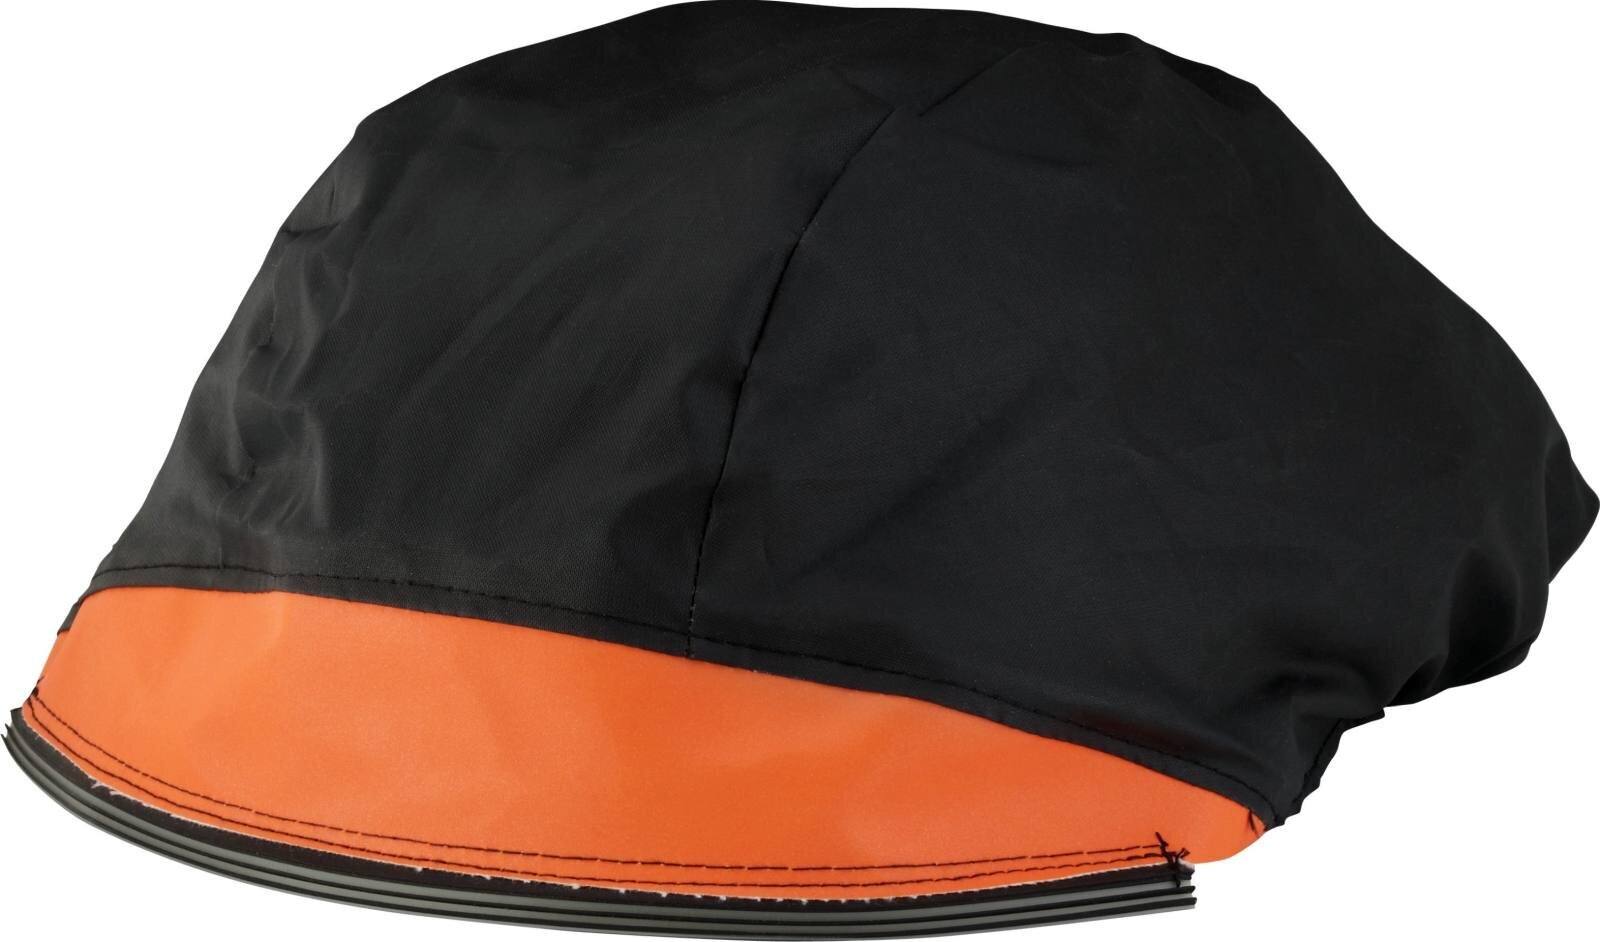 3M Versaflo M-972 flame-resistant cover orange- black